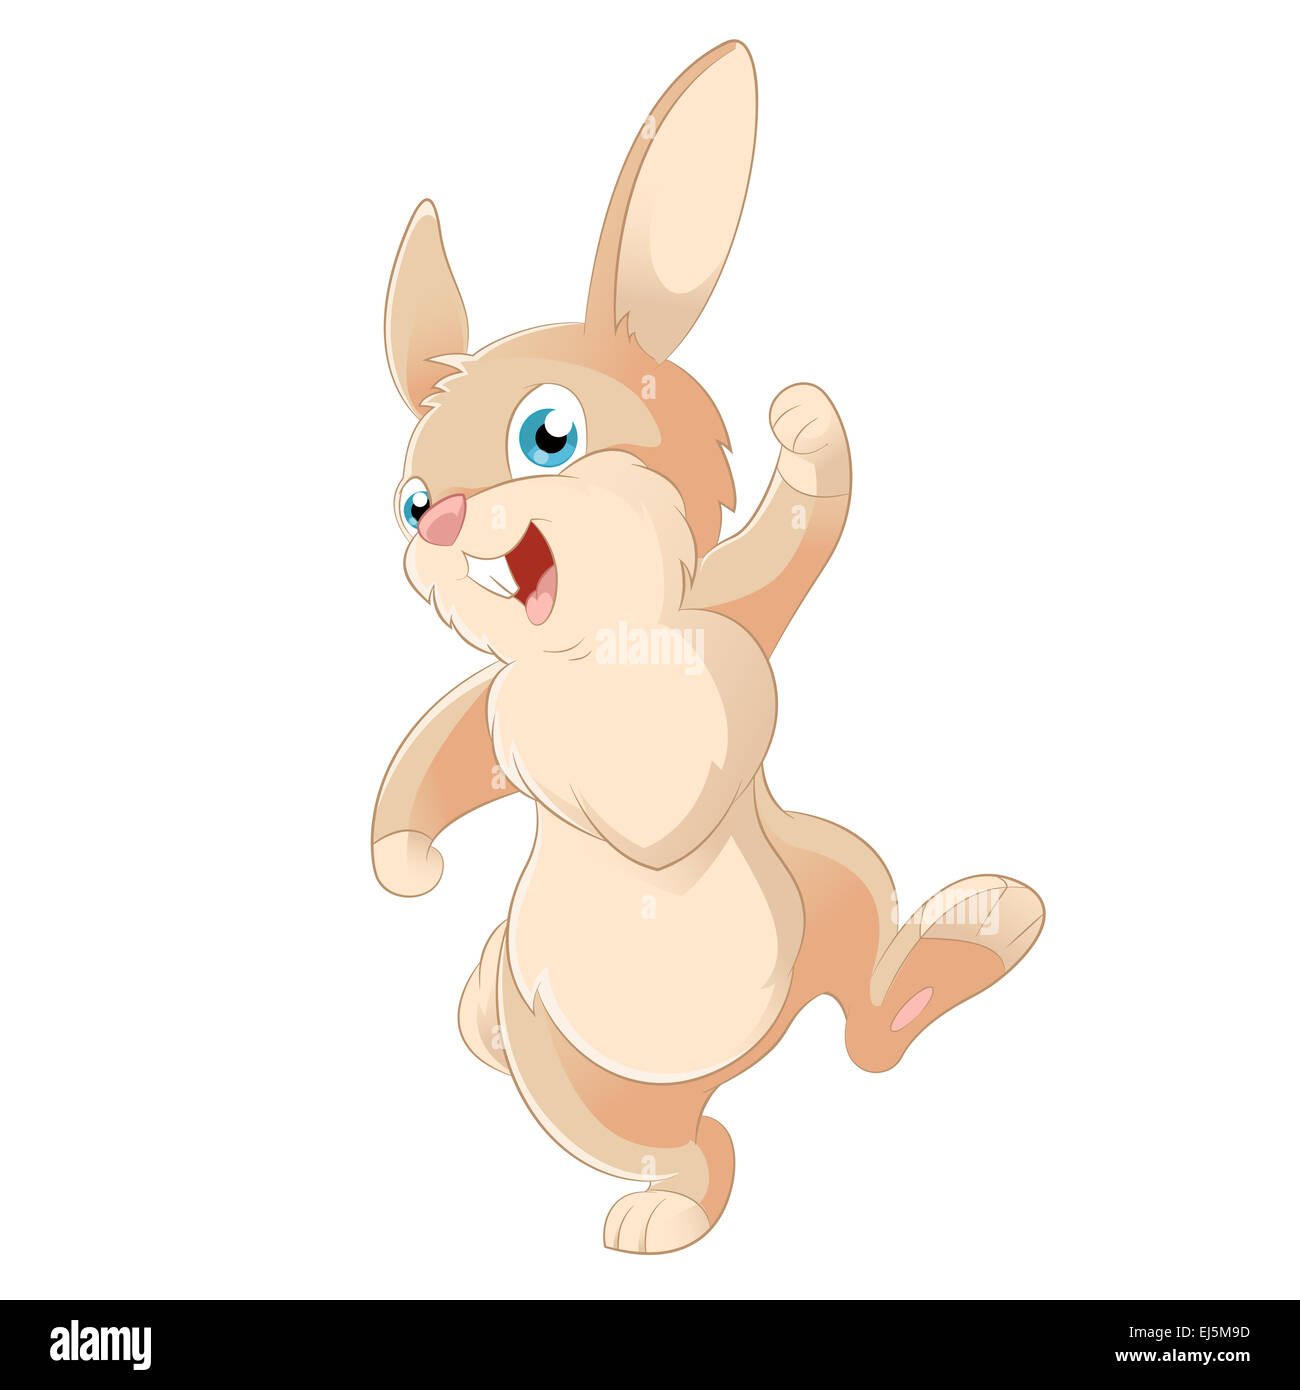 Immagine vettoriale di un simpatico cartoon rabbit Foto Stock